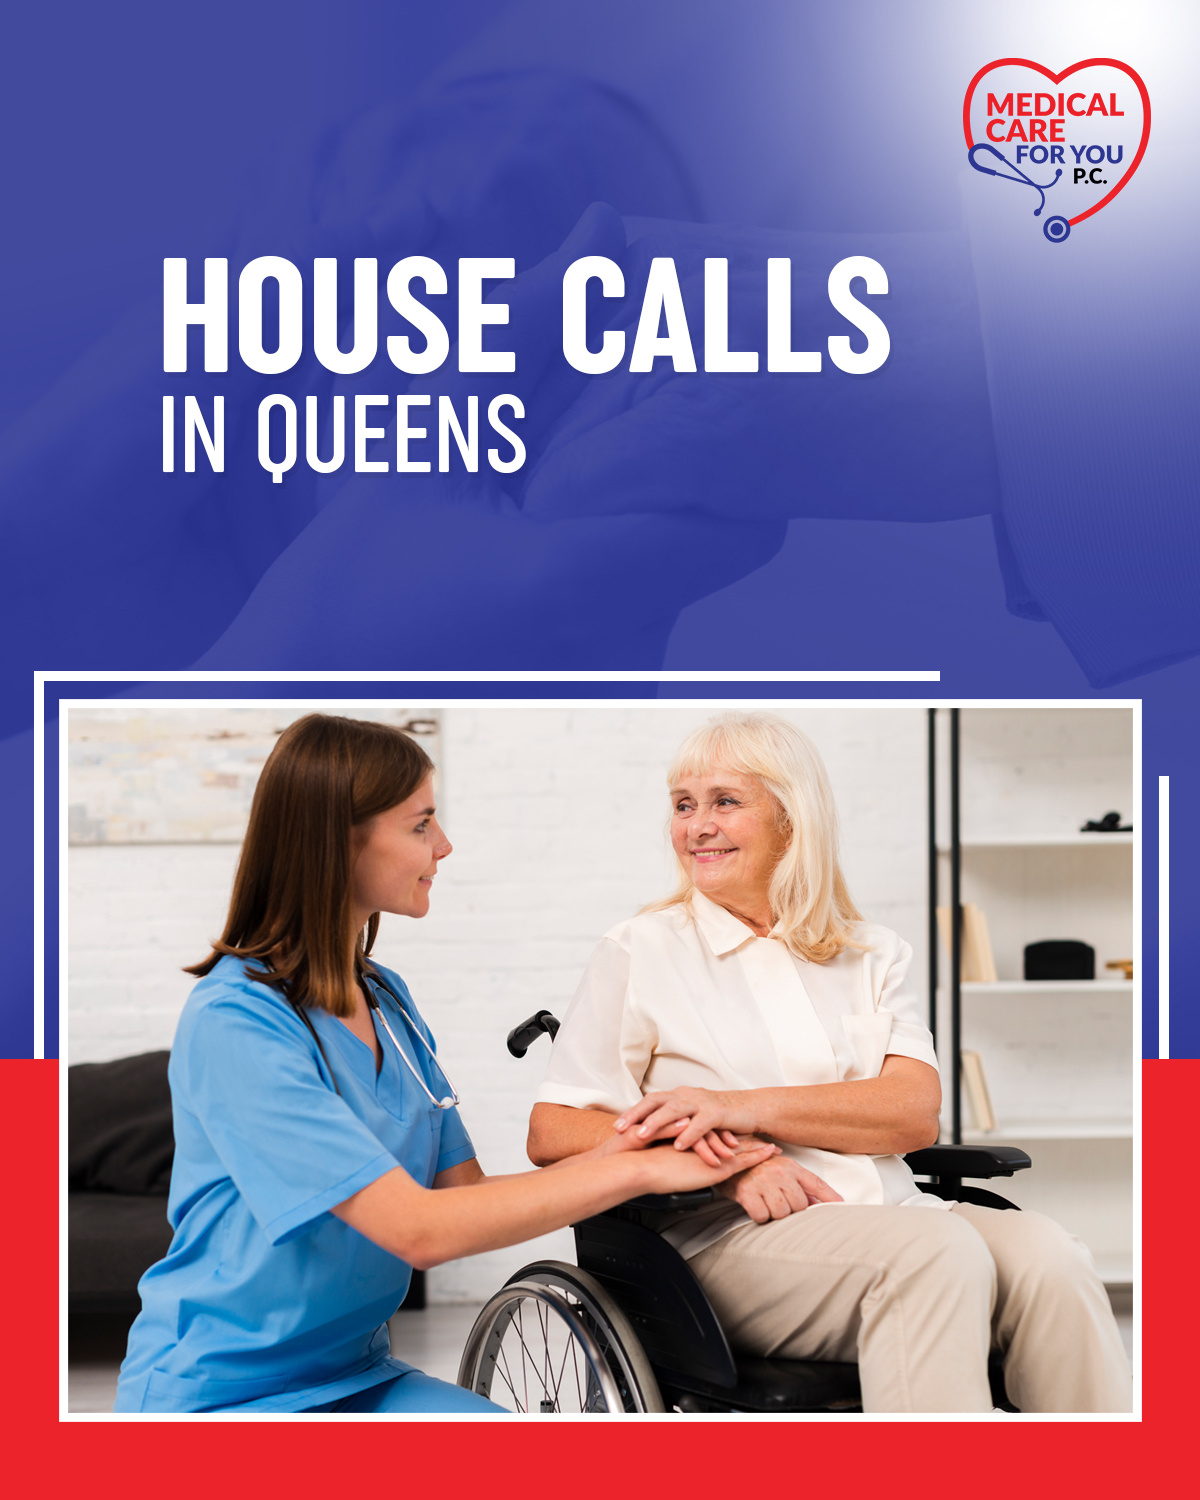 House calls in Queens